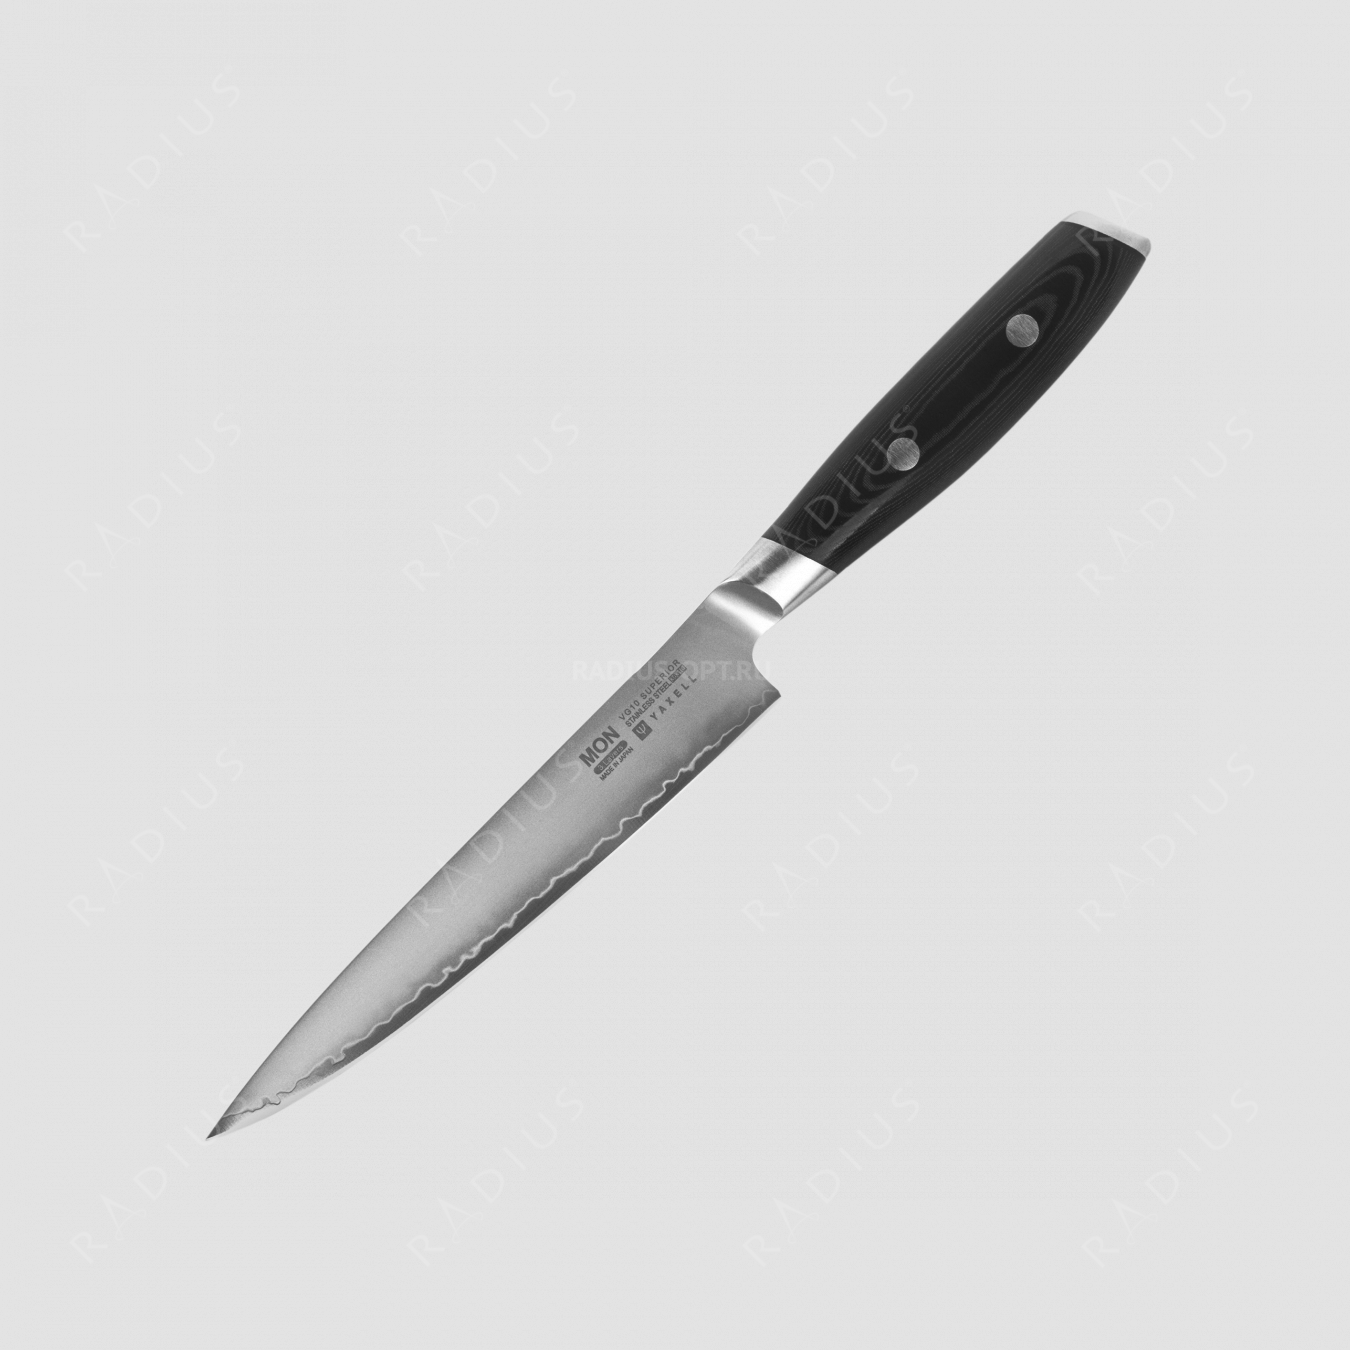 Нож кухонный для нарезки 15 см, «Petty», сталь VG-10 в обкладке из нержавеющей стали, серия Mon, YAXELL, Япония